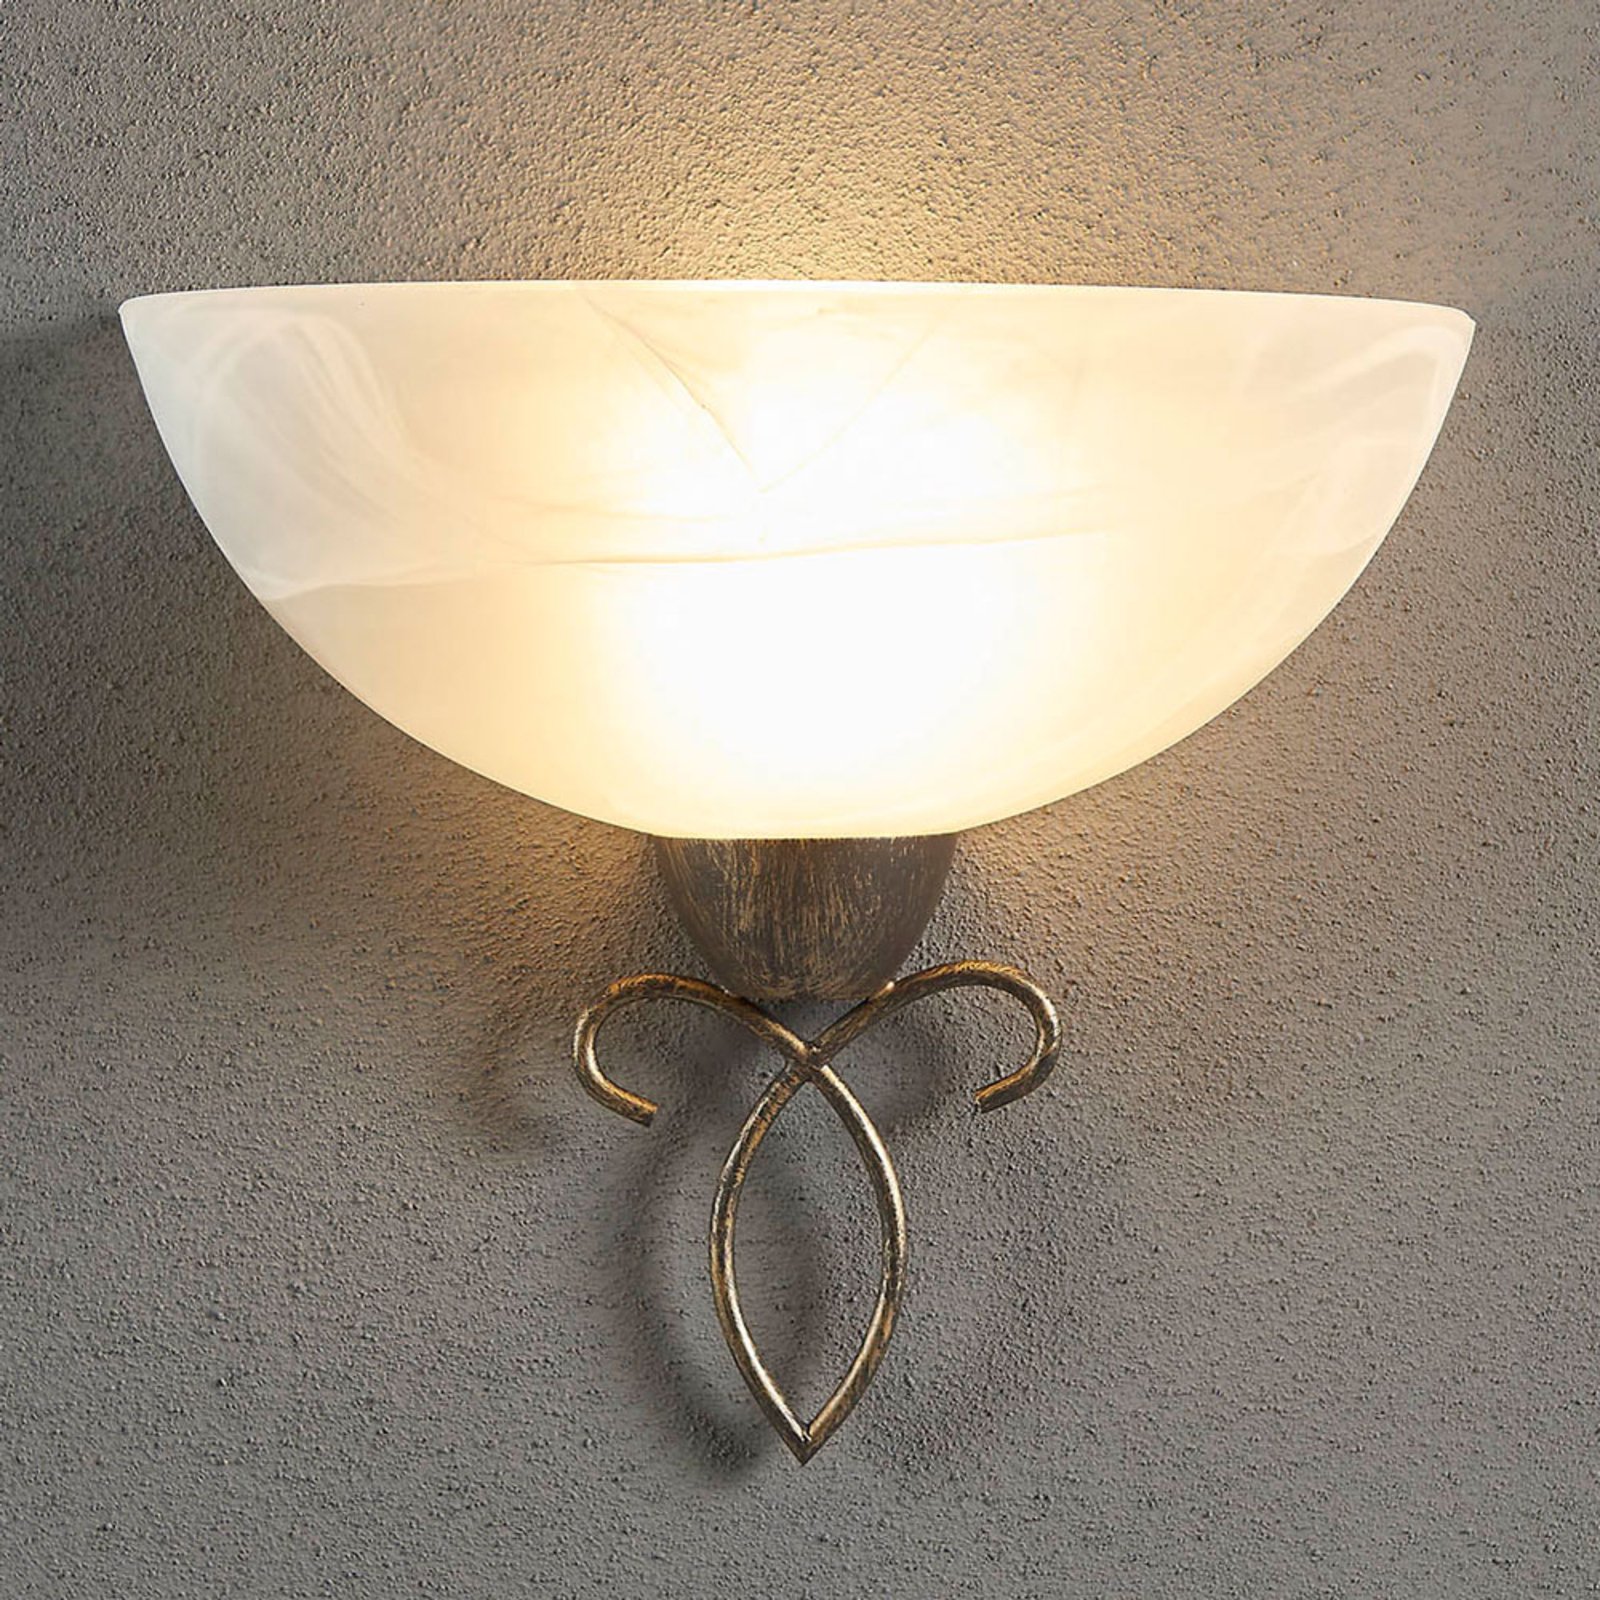 Mohija romantikus stílusú fali lámpa